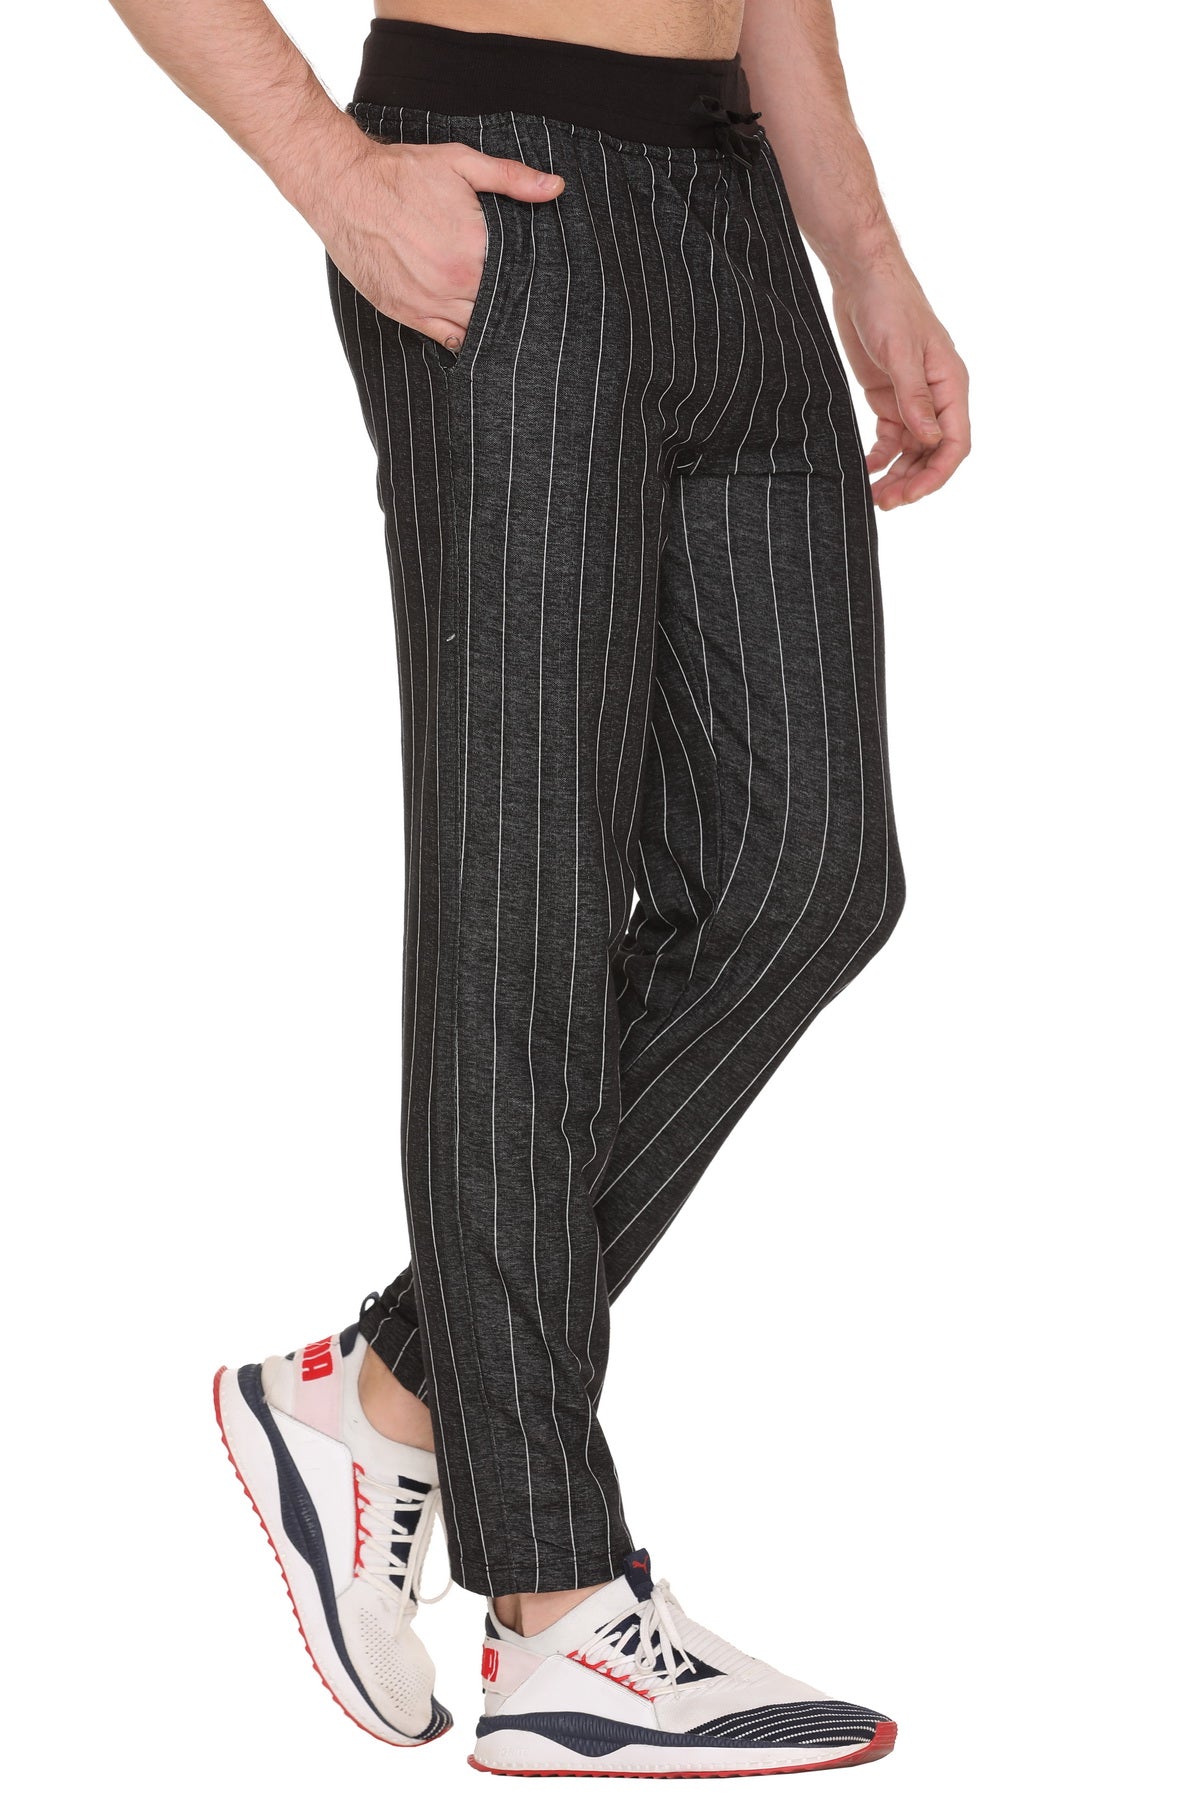 Men's Soft 100% Cotton Flannel Plaid Lounge Pajama Pants (3-Pack) -  UntilGone.com